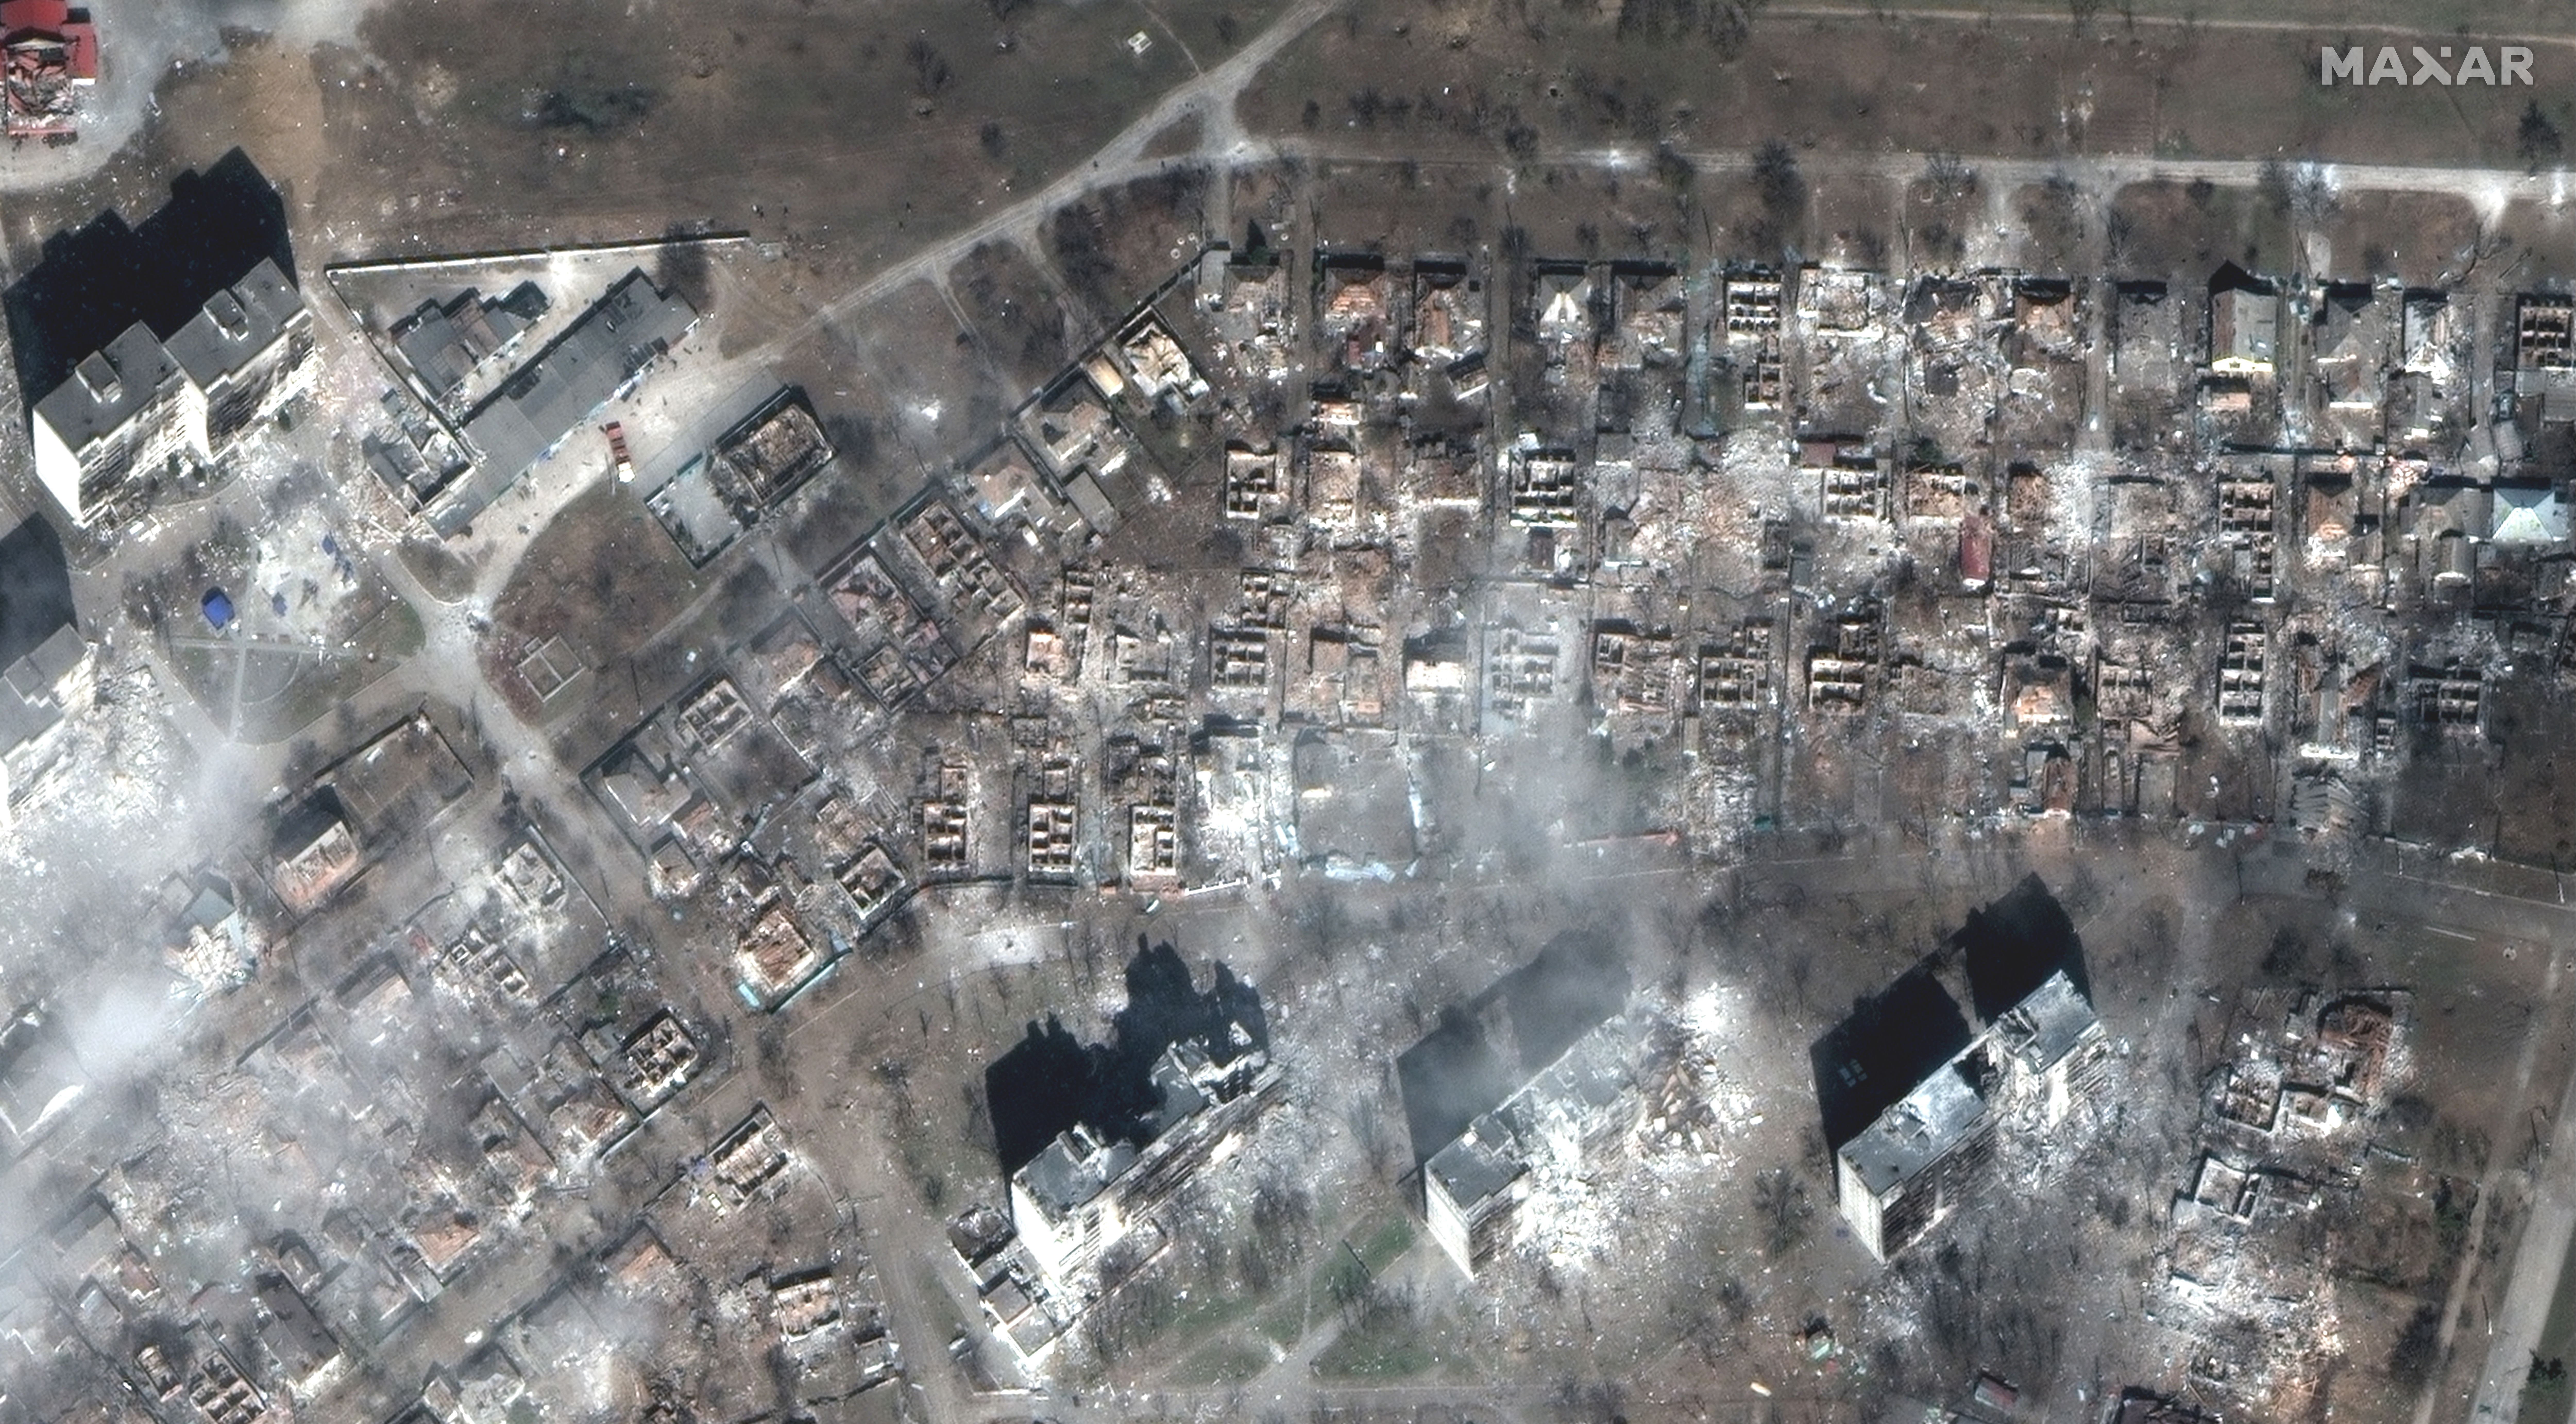 في 29 مارس ، دمر القصف المباني السكنية والمنازل في ماريوبول.